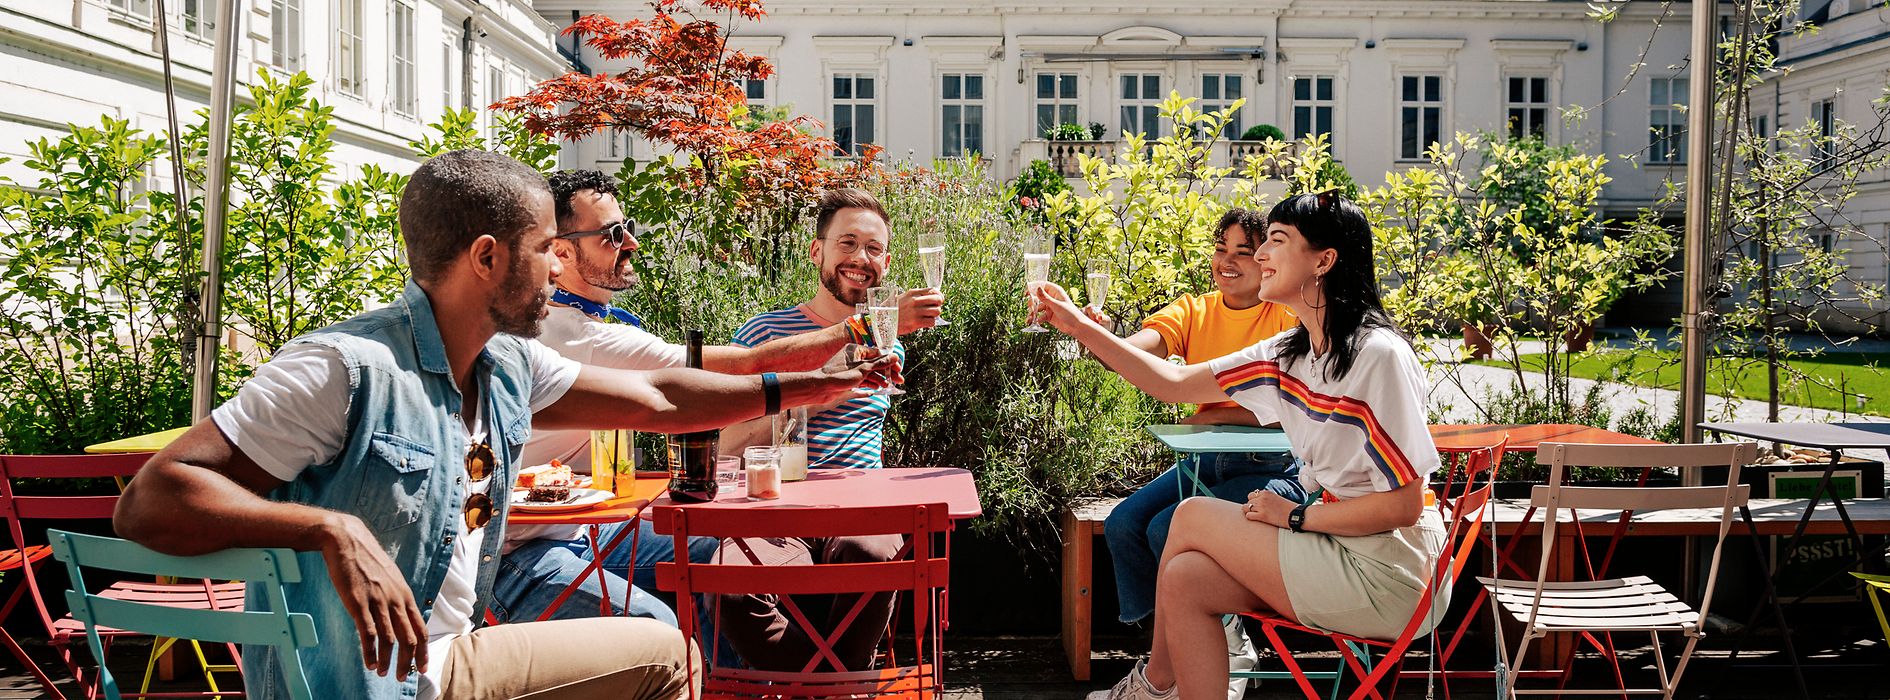 Gruppe junger Leute trinkt gemeinsam in einem Schanigarten